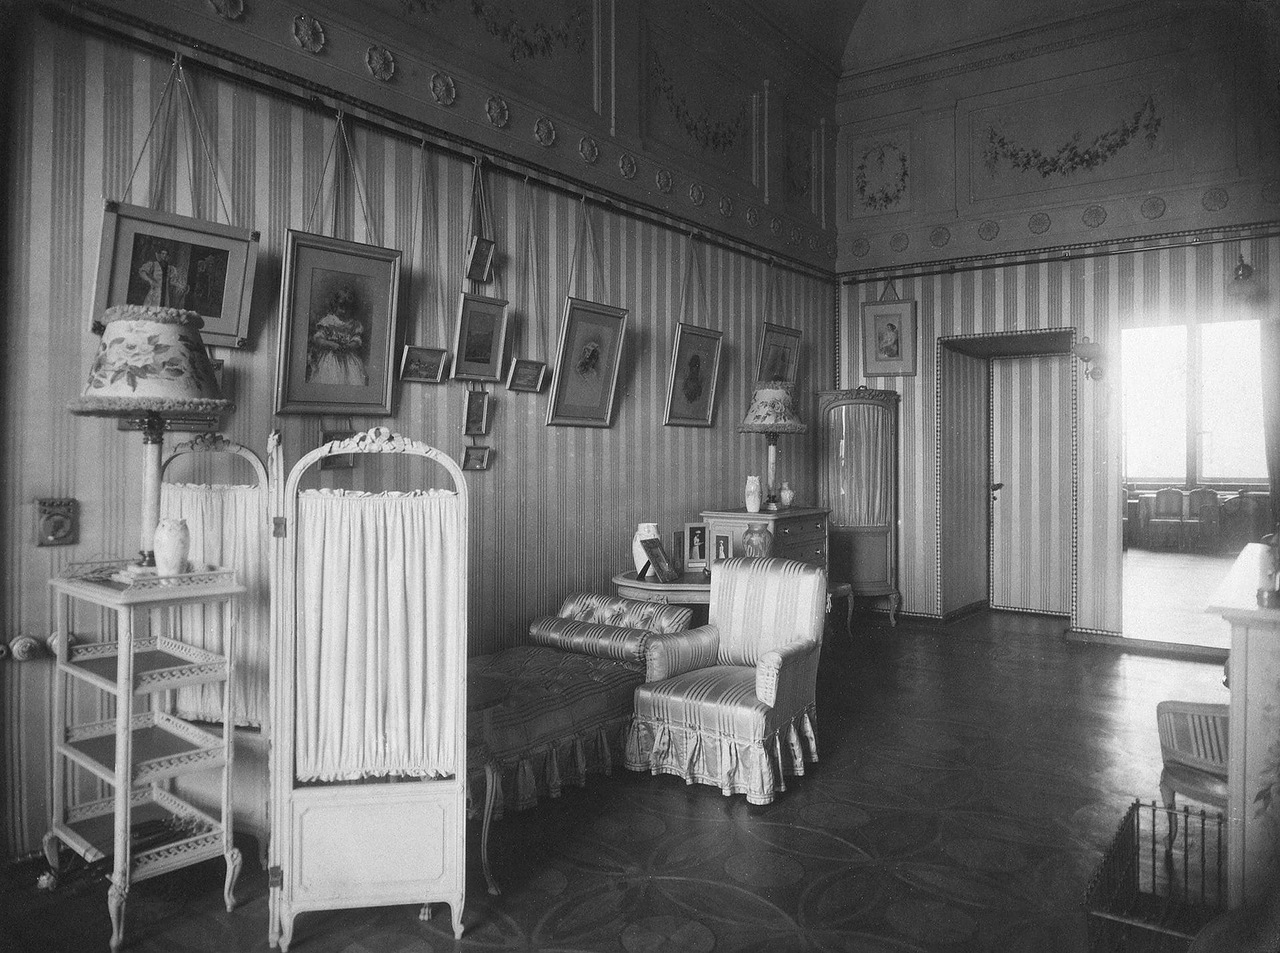 През януари 1920 г. в Зимния дворец е отворен Държавният музей на революцията. Той дели сградата с Ермитажа чак до 1941 година. В момента Зимният дворец и Ермитажът са сред най-популярните атракции за туристи от цял свят. / Спалнята на императрица Александра Фьодоровна.